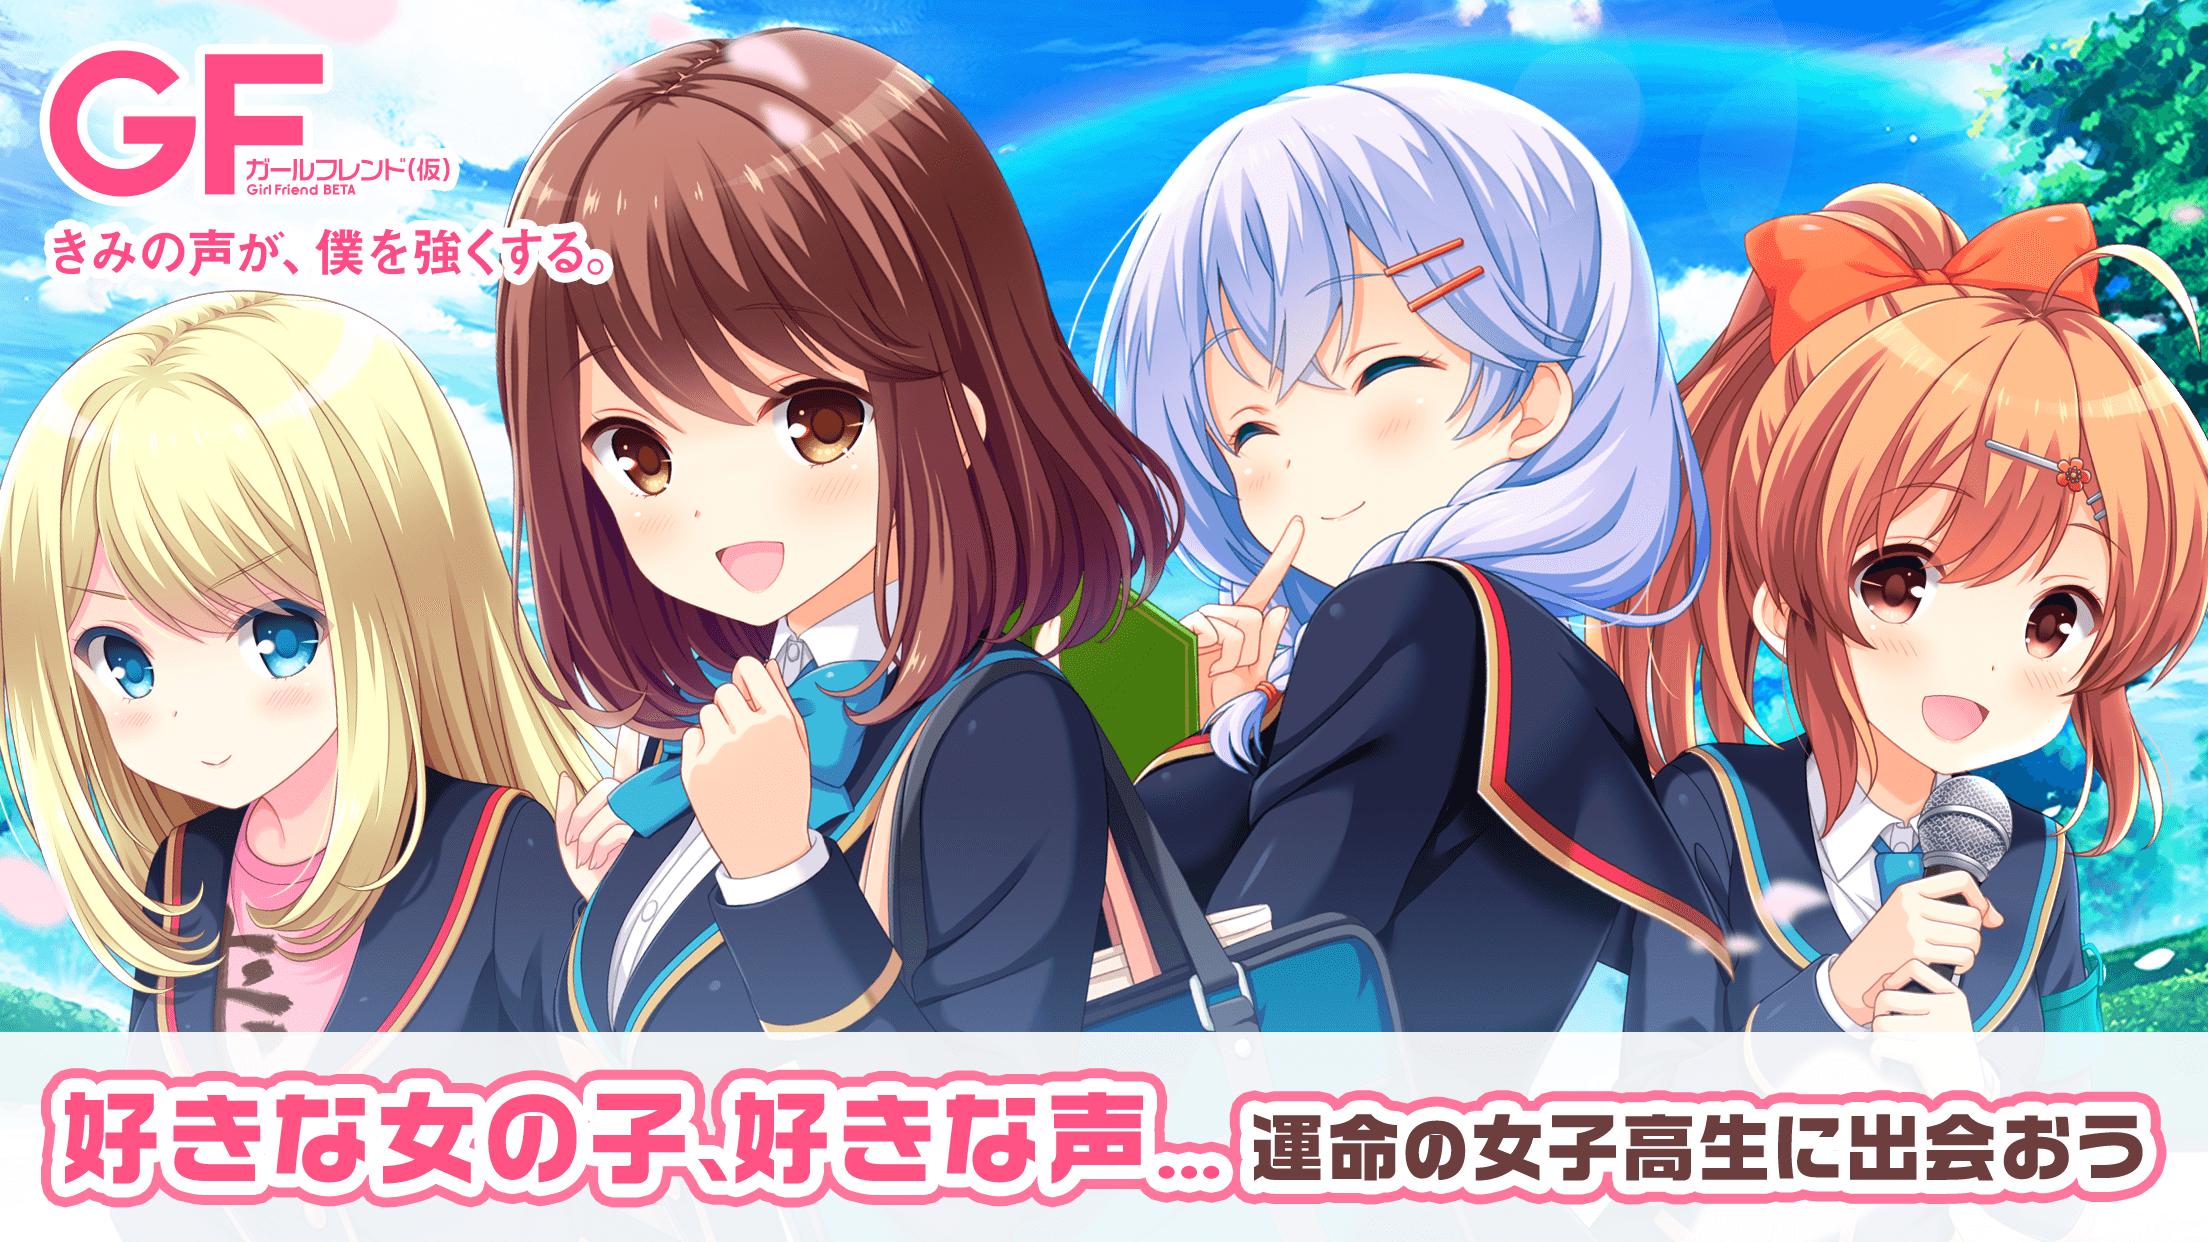 ガールフレンド 仮 For Android Apk Download